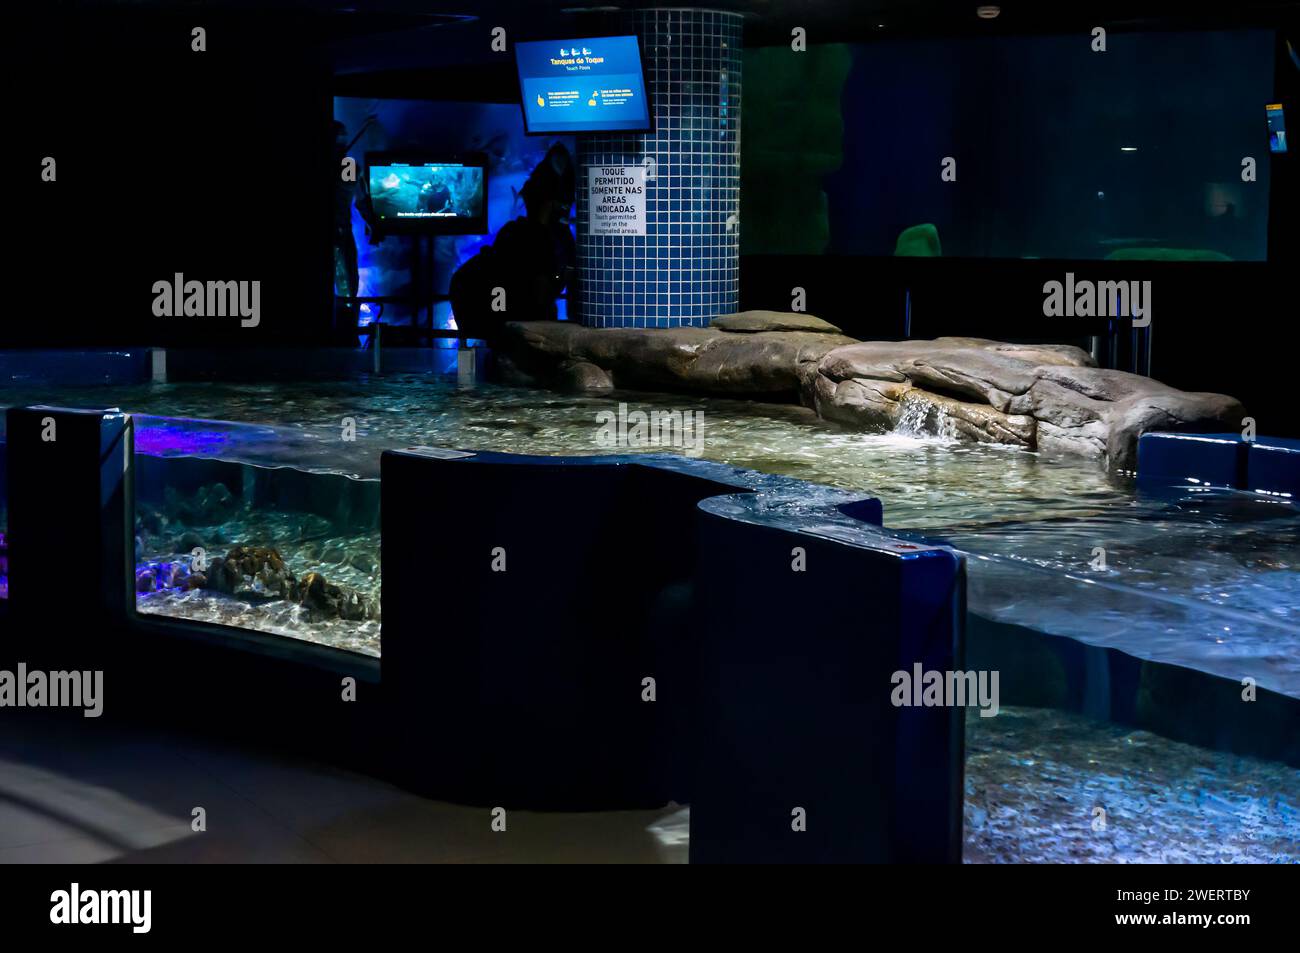 Der leere Touch Pools Tank Bereich, in dem Besucher einige Fischarten anfassen können, befindet sich in einem dunklen Raum des AquaRio öffentlichen Aquariums im Bezirk Gamboa. Stockfoto